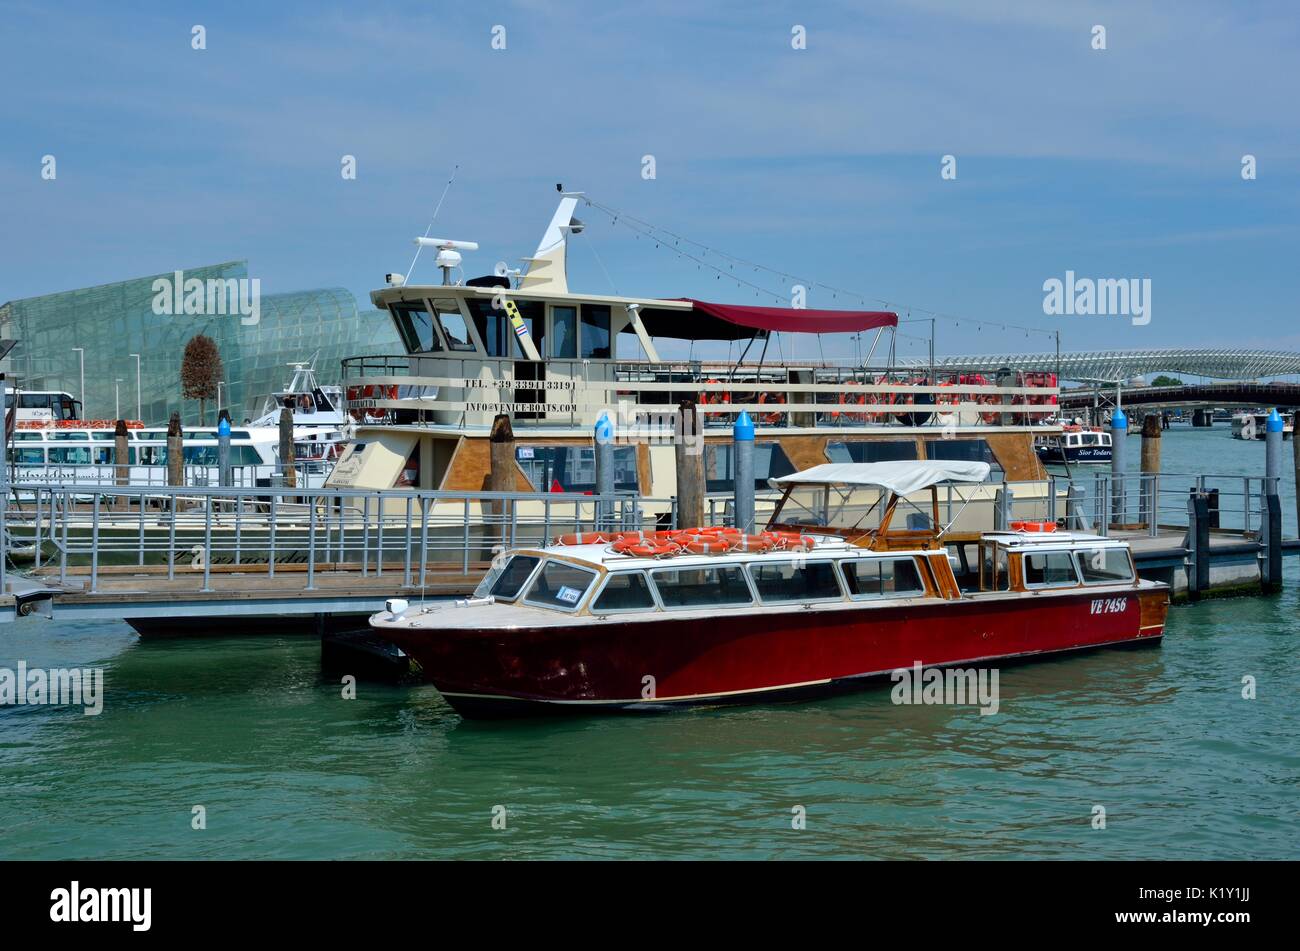 Taxi de l'eau -Bus de l'eau, près de la station de monorail de Venise, Venise, Italie, Europe Banque D'Images